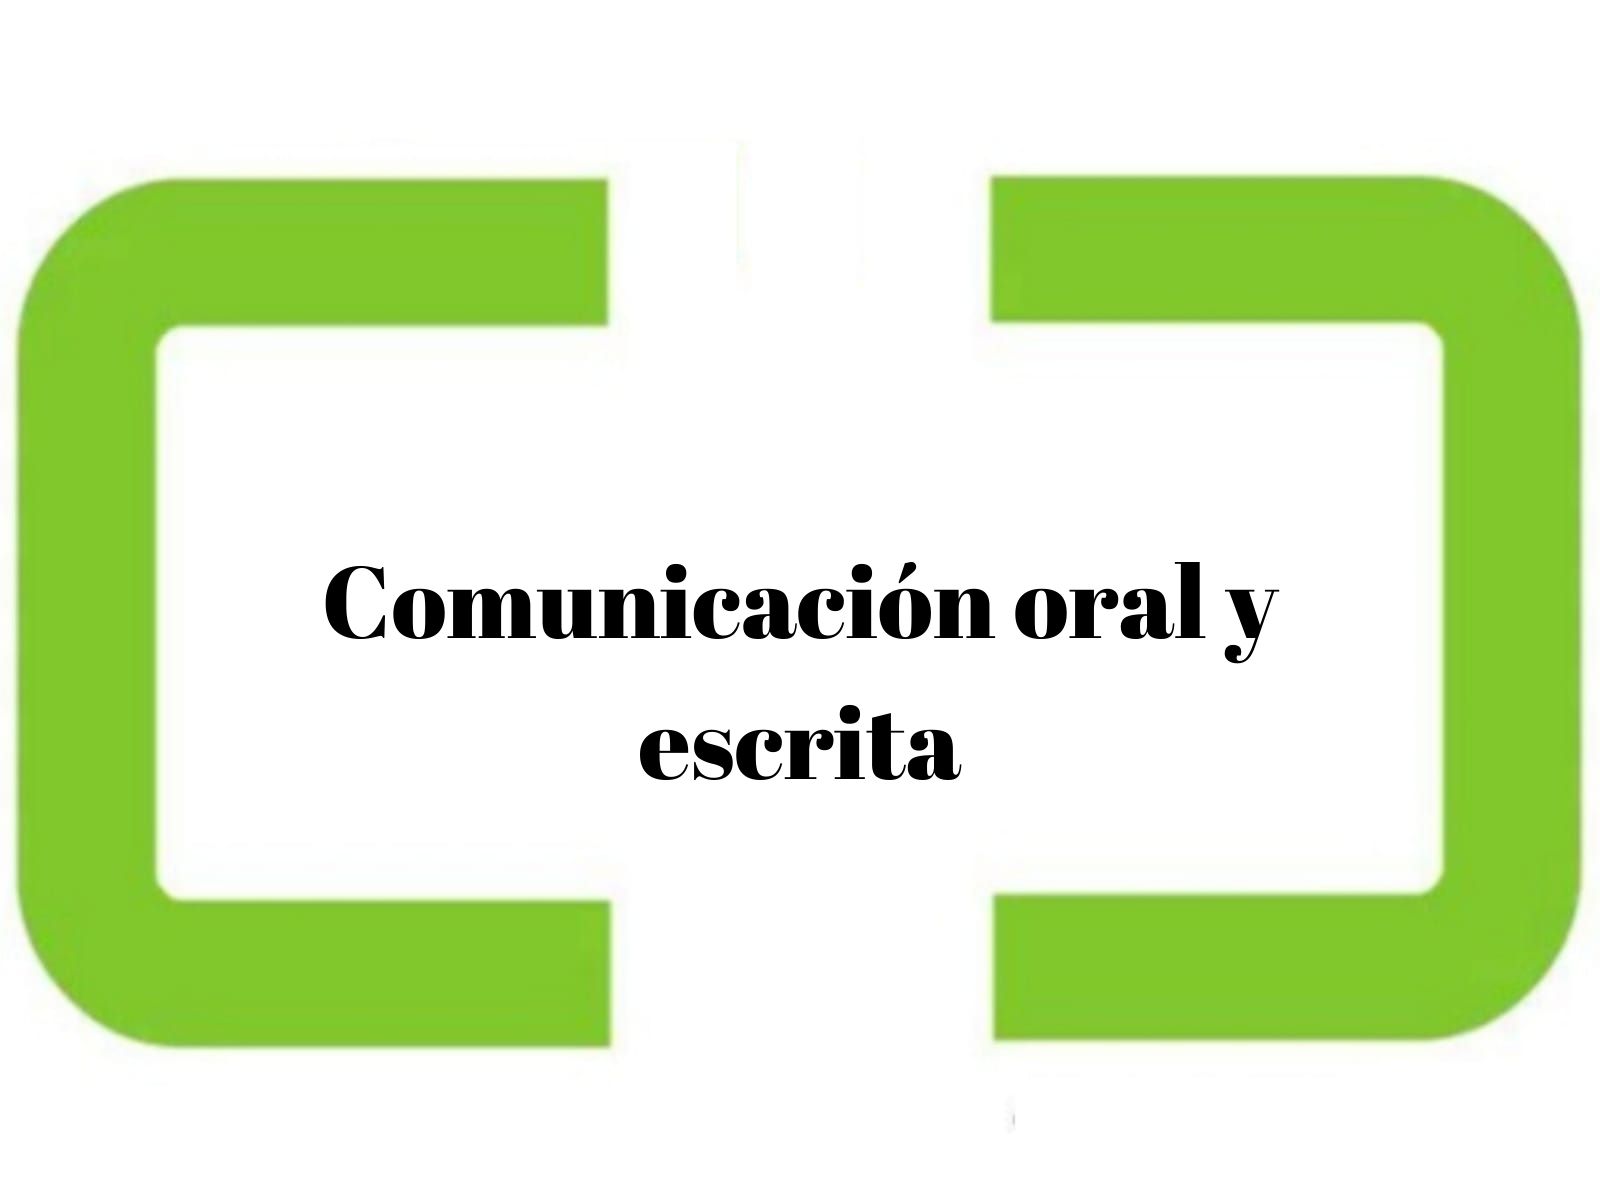 Comunicacion oral y escrita